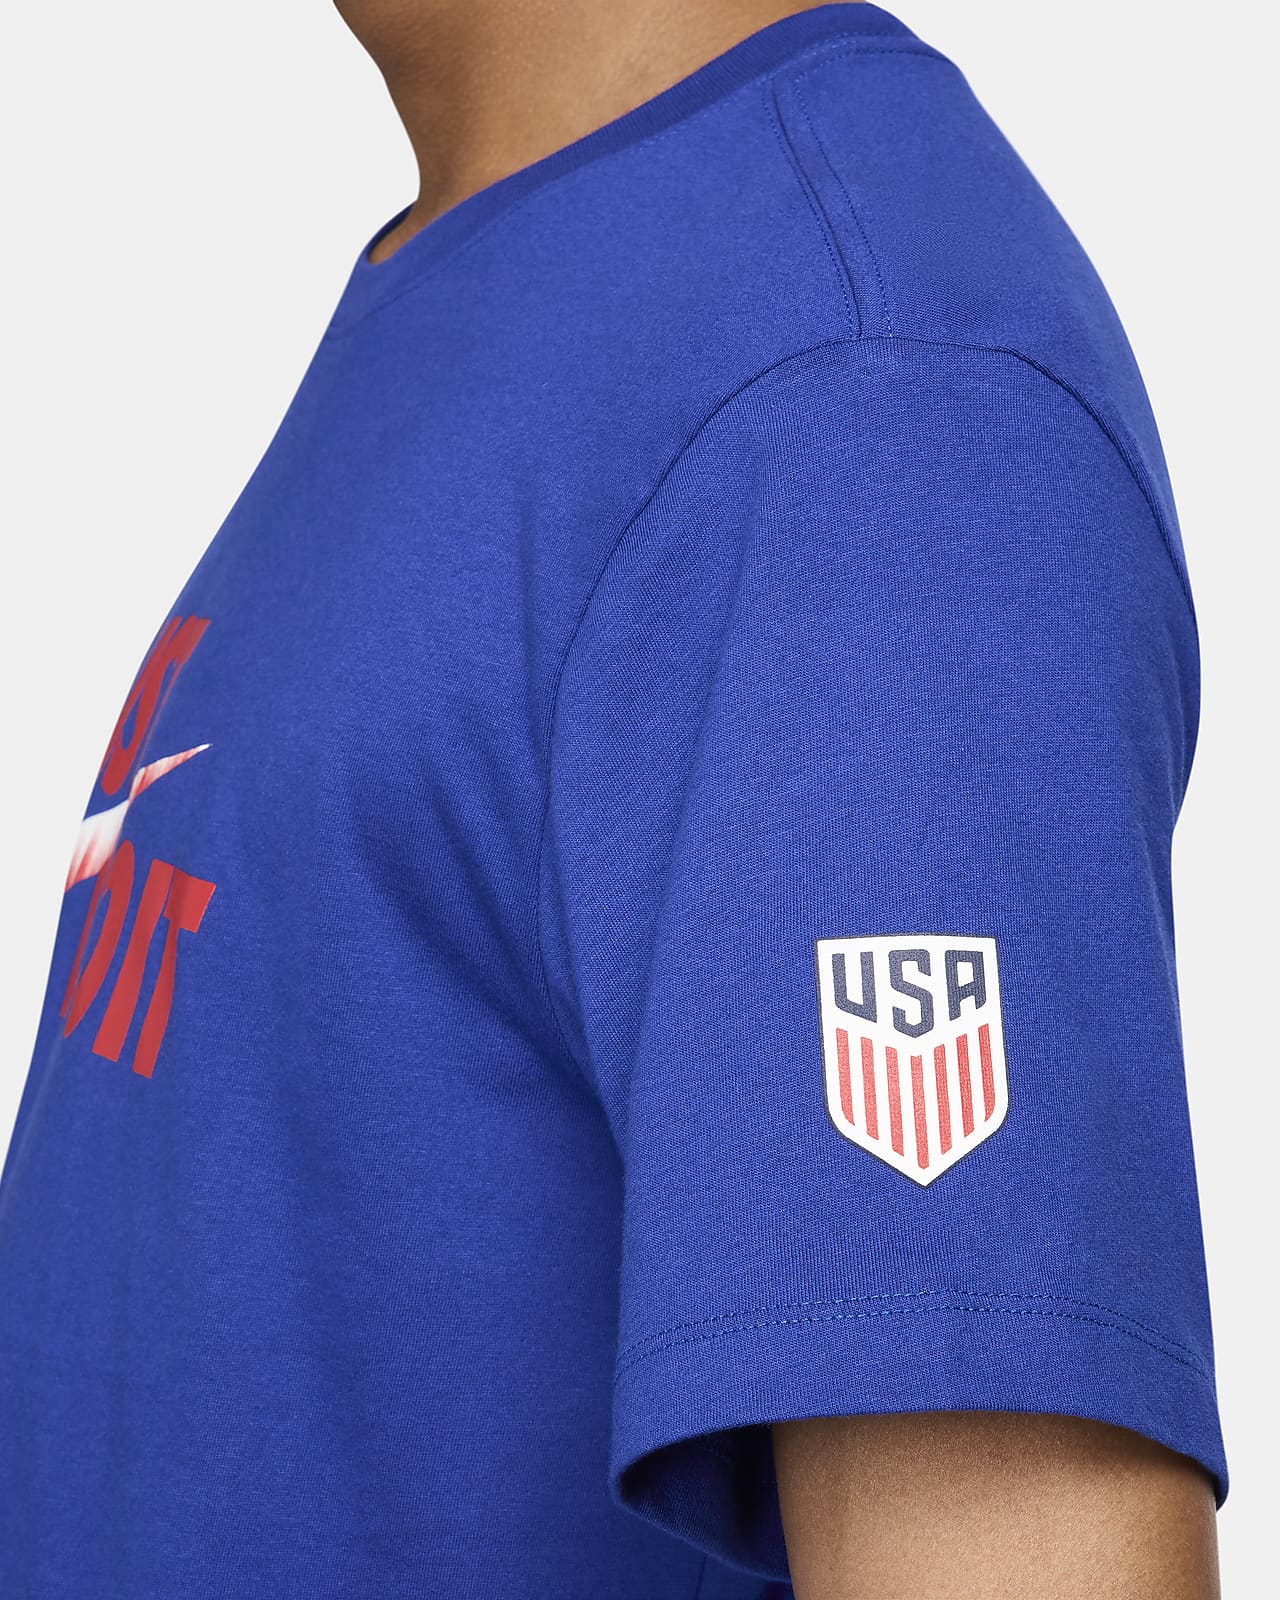 USMNT Men's Nike Soccer T-Shirt. Nike.com